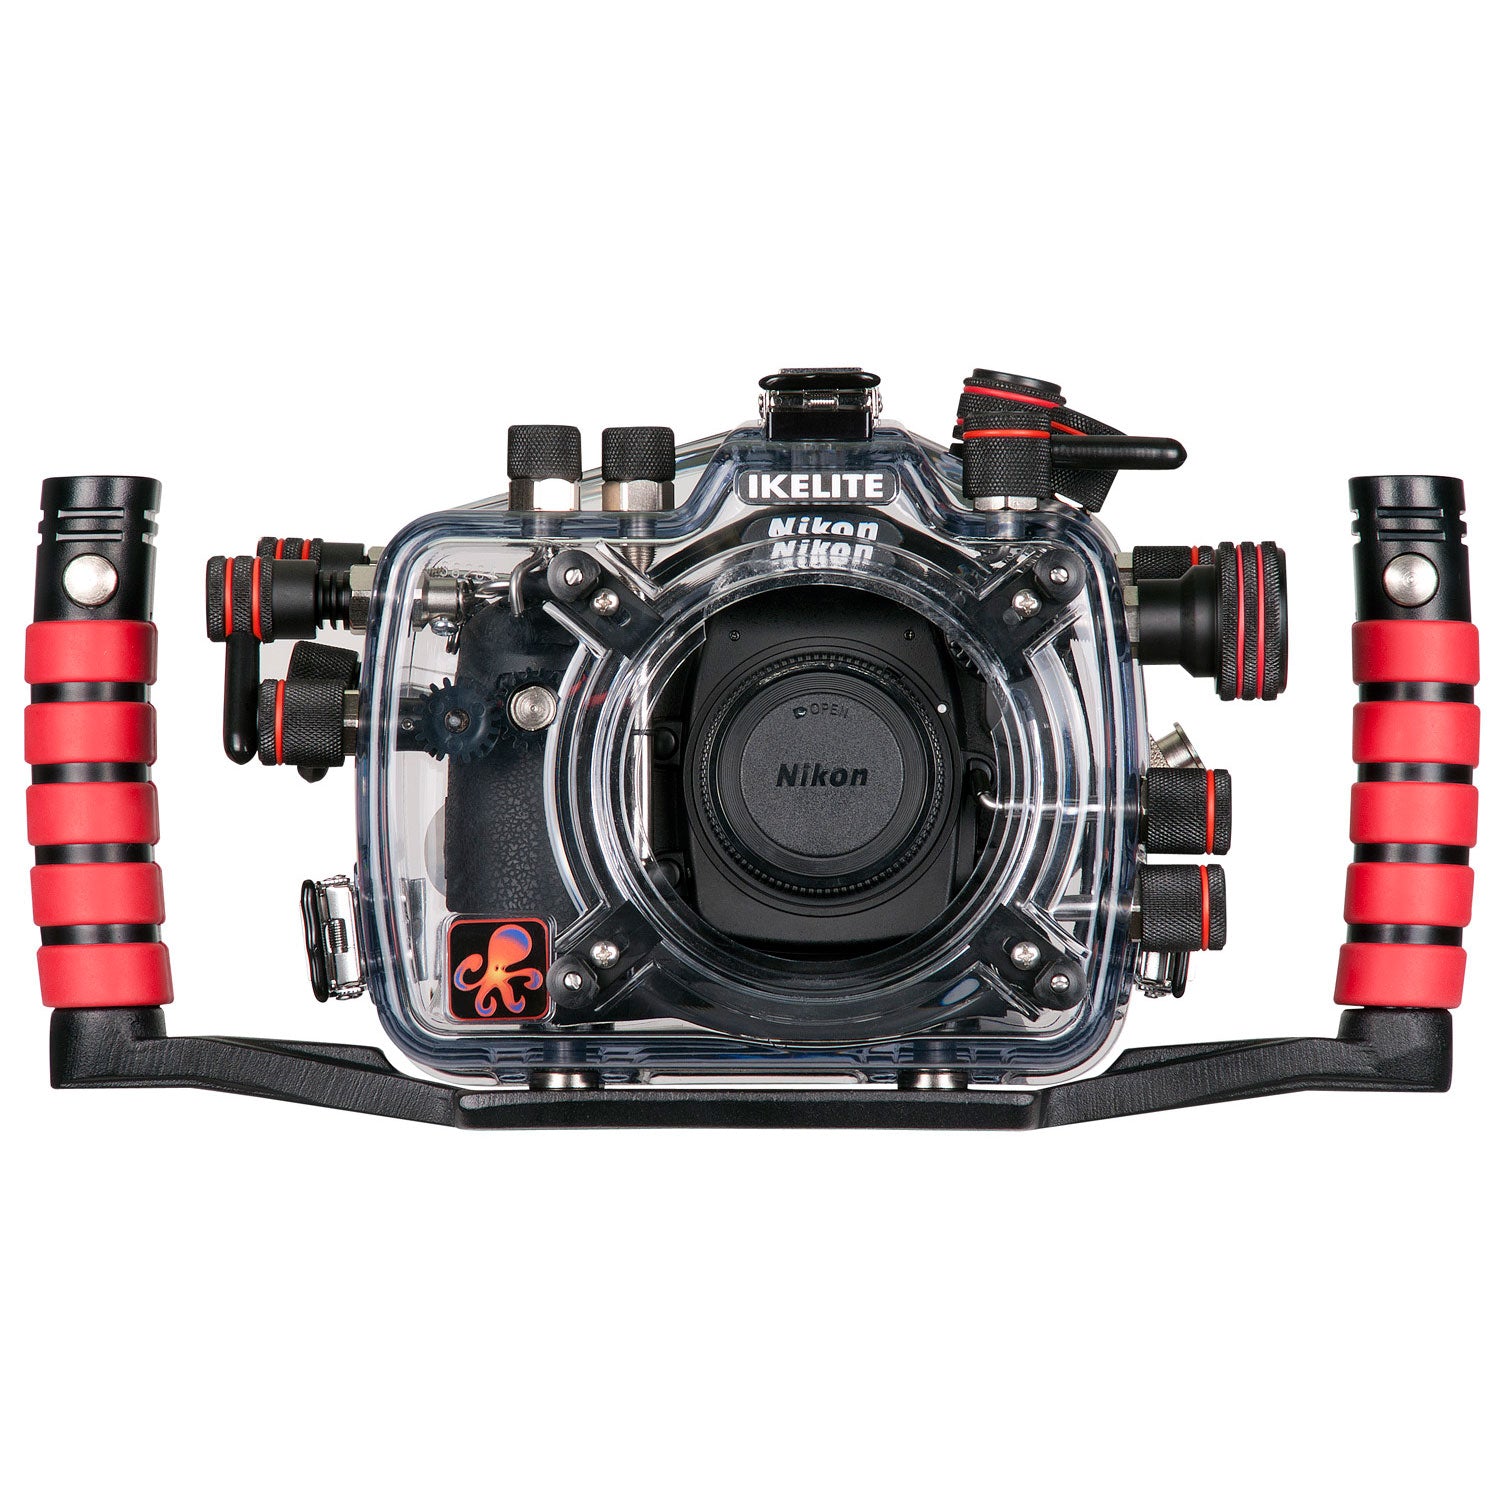 200FL Underwater TTL Housing for Nikon D300s DSLR